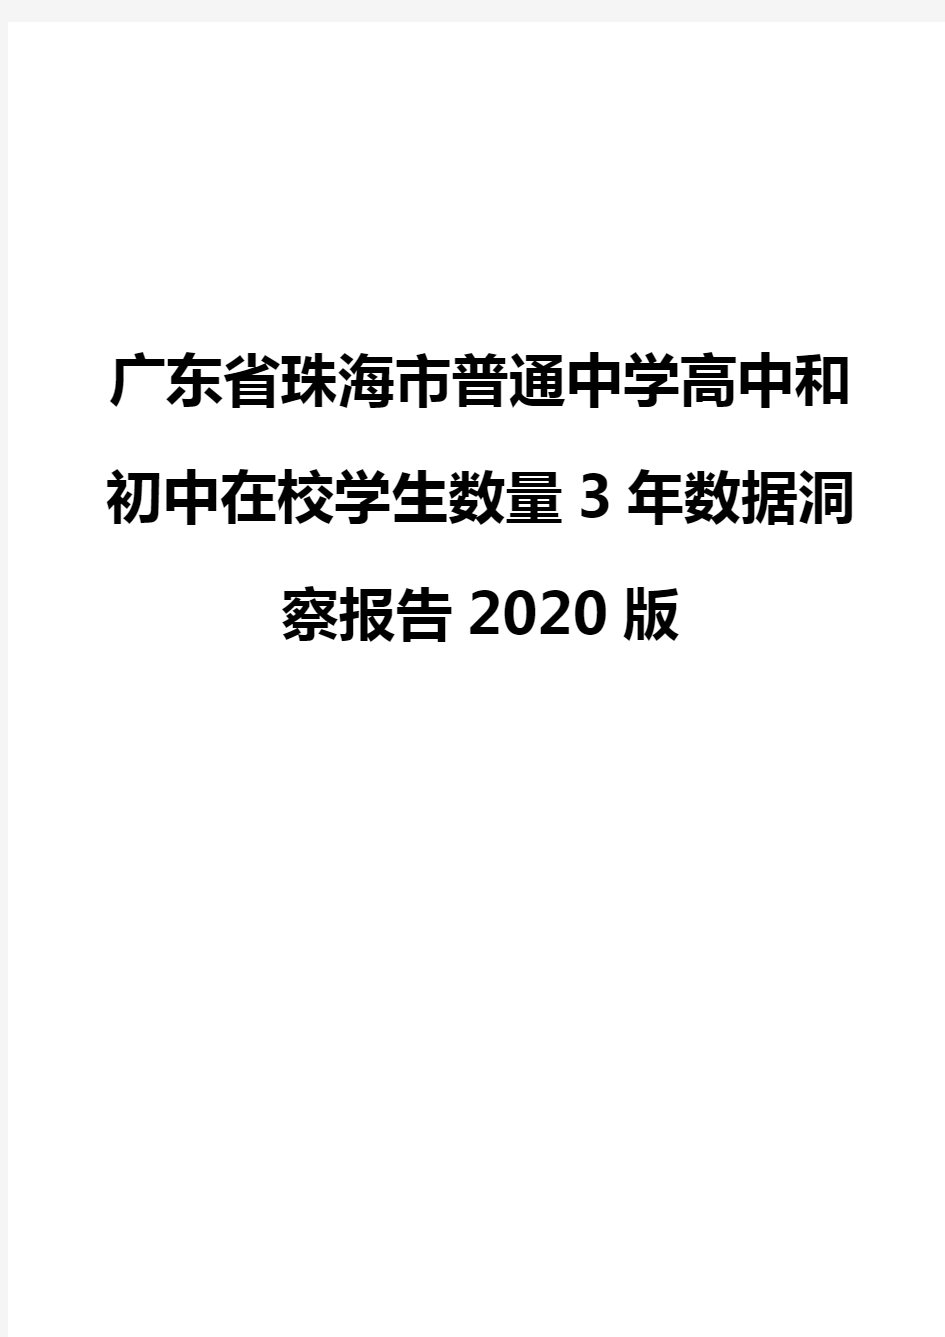 广东省珠海市普通中学高中和初中在校学生数量3年数据洞察报告2020版